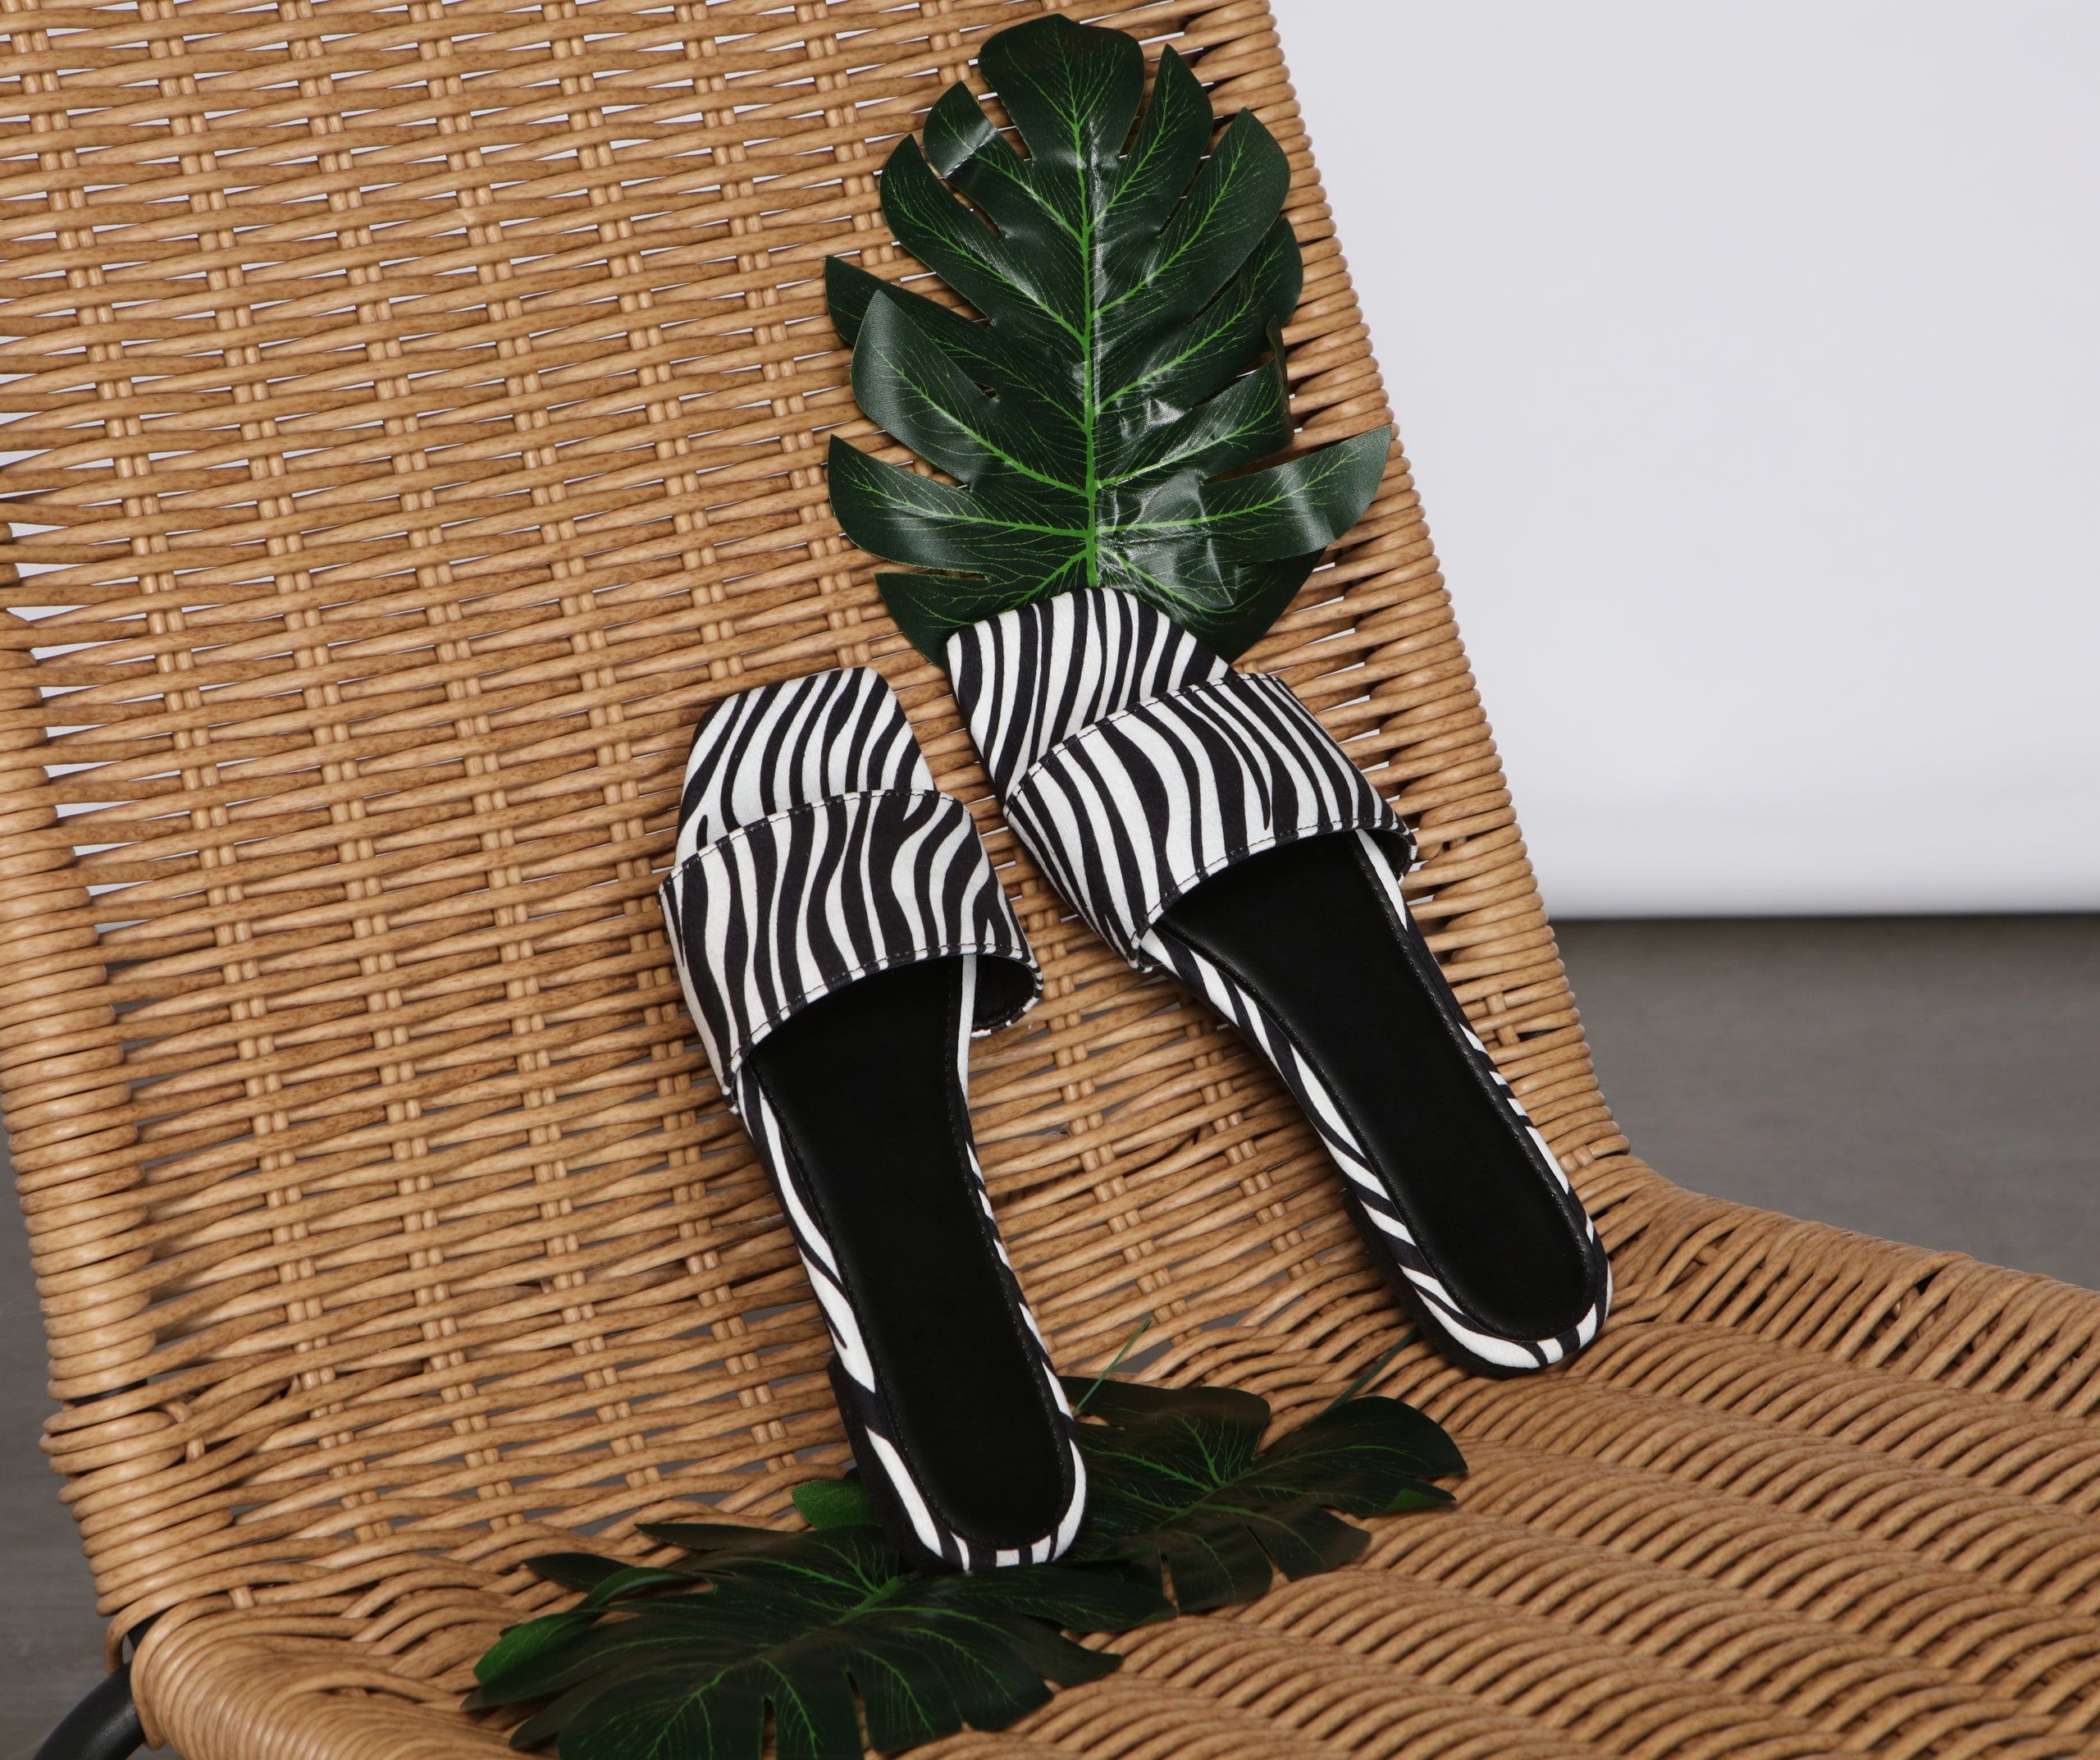 Keep It Trendy Zebra Print Sandals Newgew